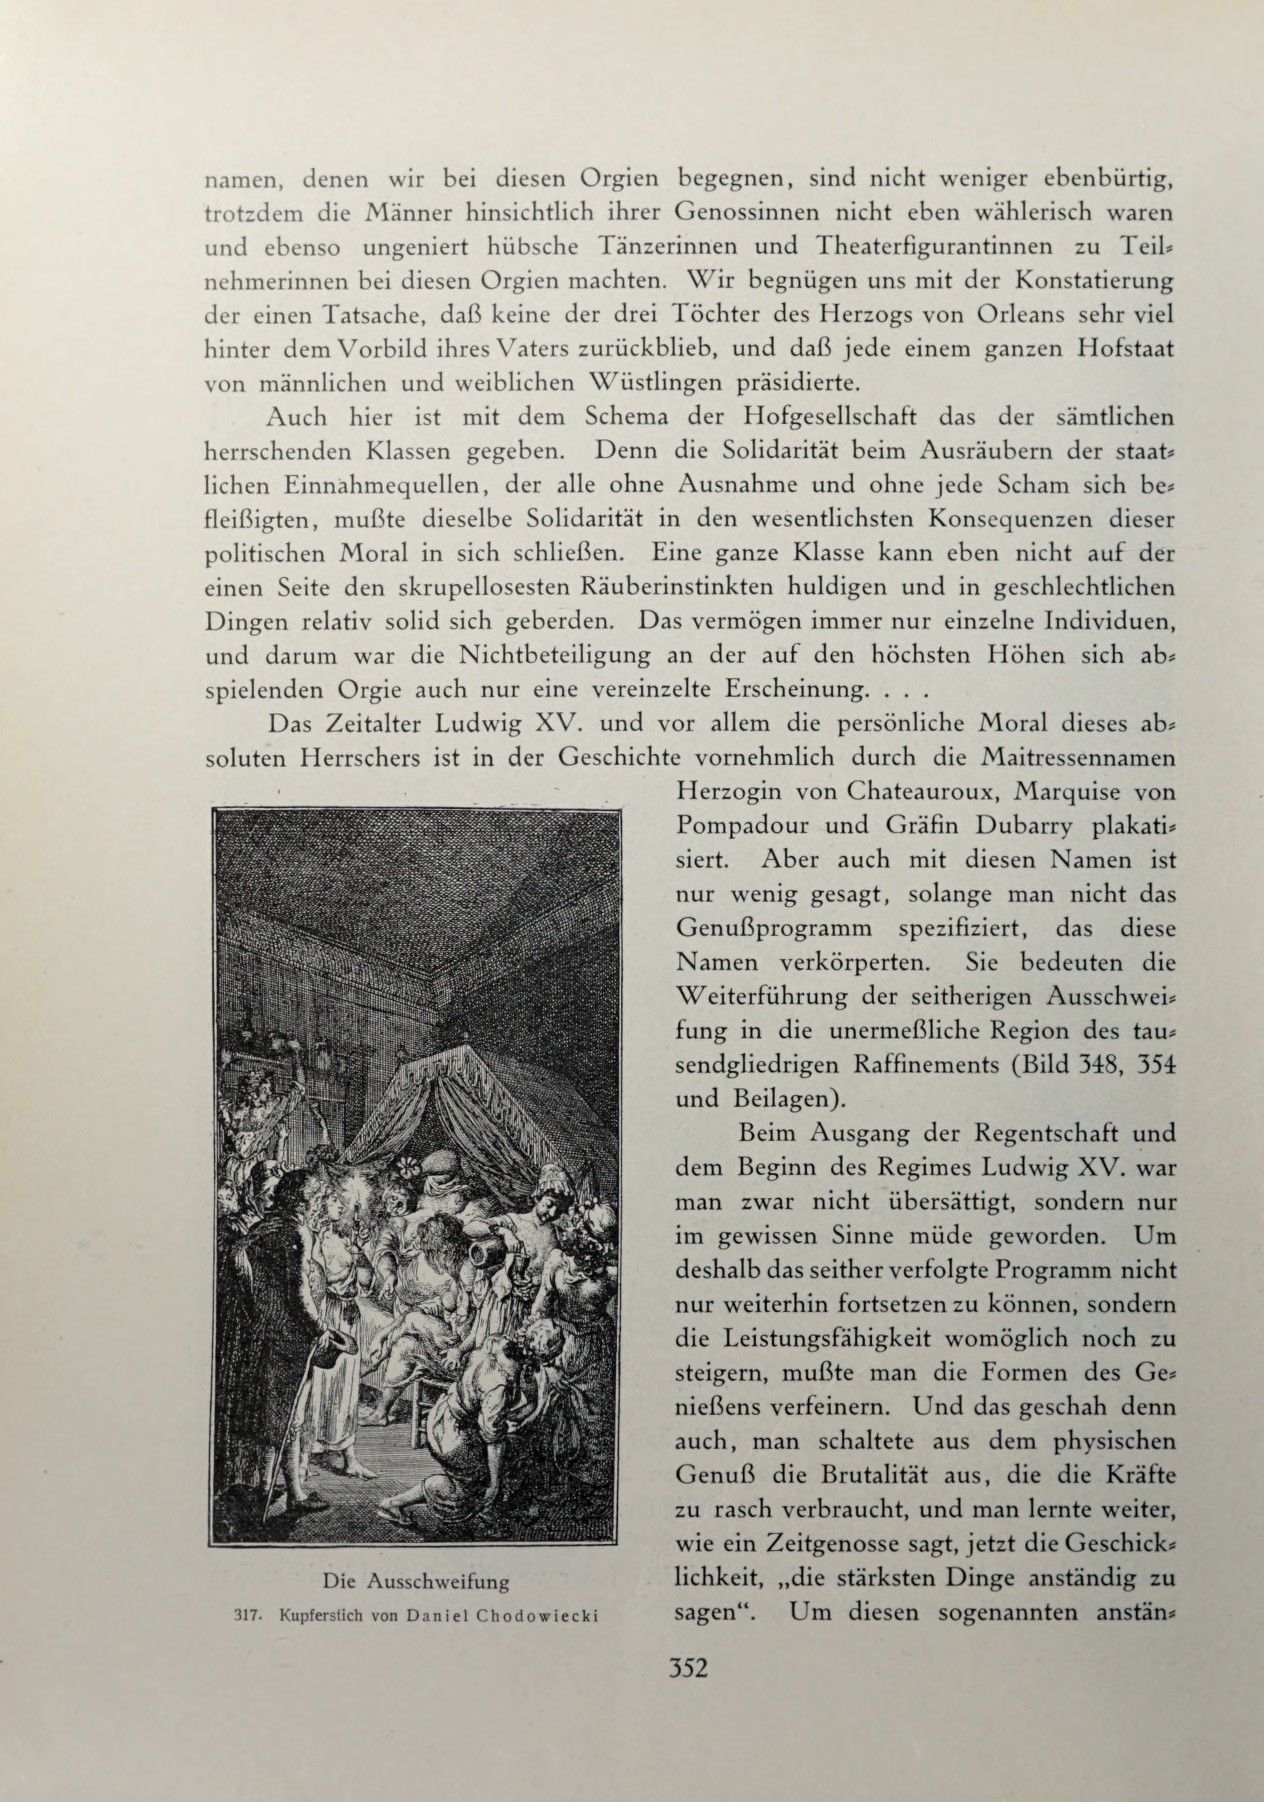 [Eduard Fuchs] Illustrierte Sittengeschichte vom Mittelalter bis zur Gegenwart: Bd. 2. and Ergänzungsband. Die galante Zeit [German] 509